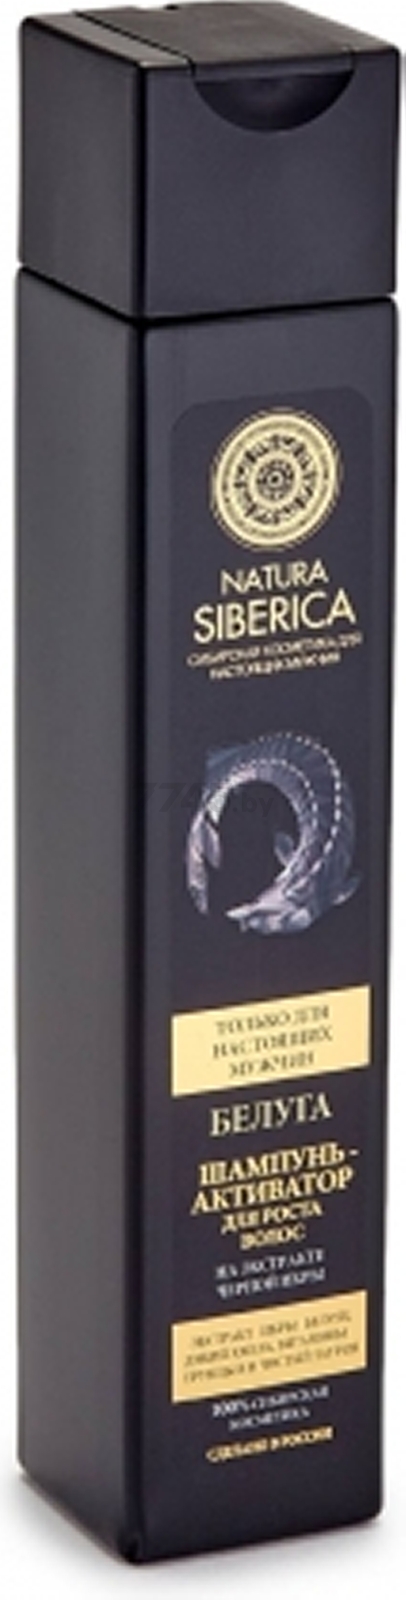 Шампунь NATURA SIBERICA Белуга Активатор Для роста волос 250 мл (4607174433809) - Фото 2